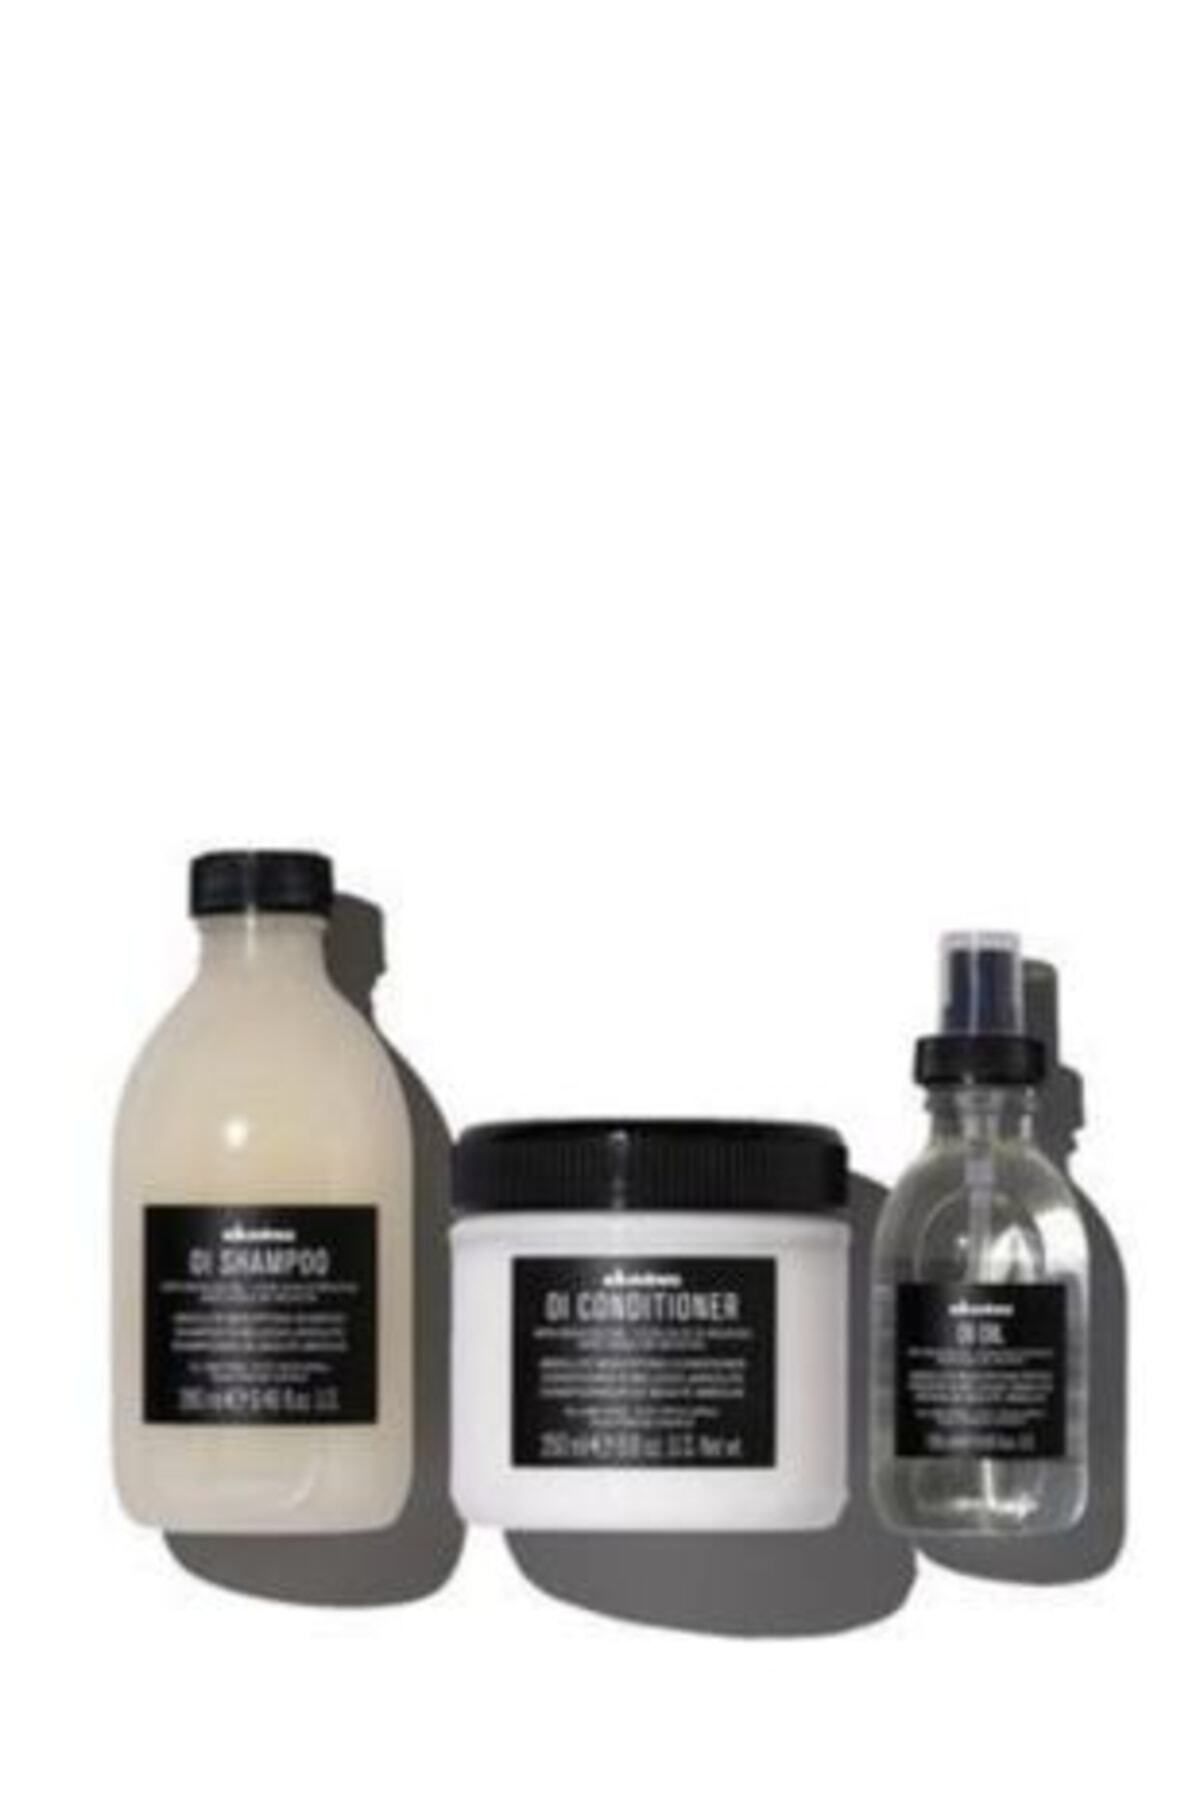 Davines DAVİNES Oi/oil Sulfate-free Shampoo 280ml + Conditioner 250ml + Oil 135ml Care Product